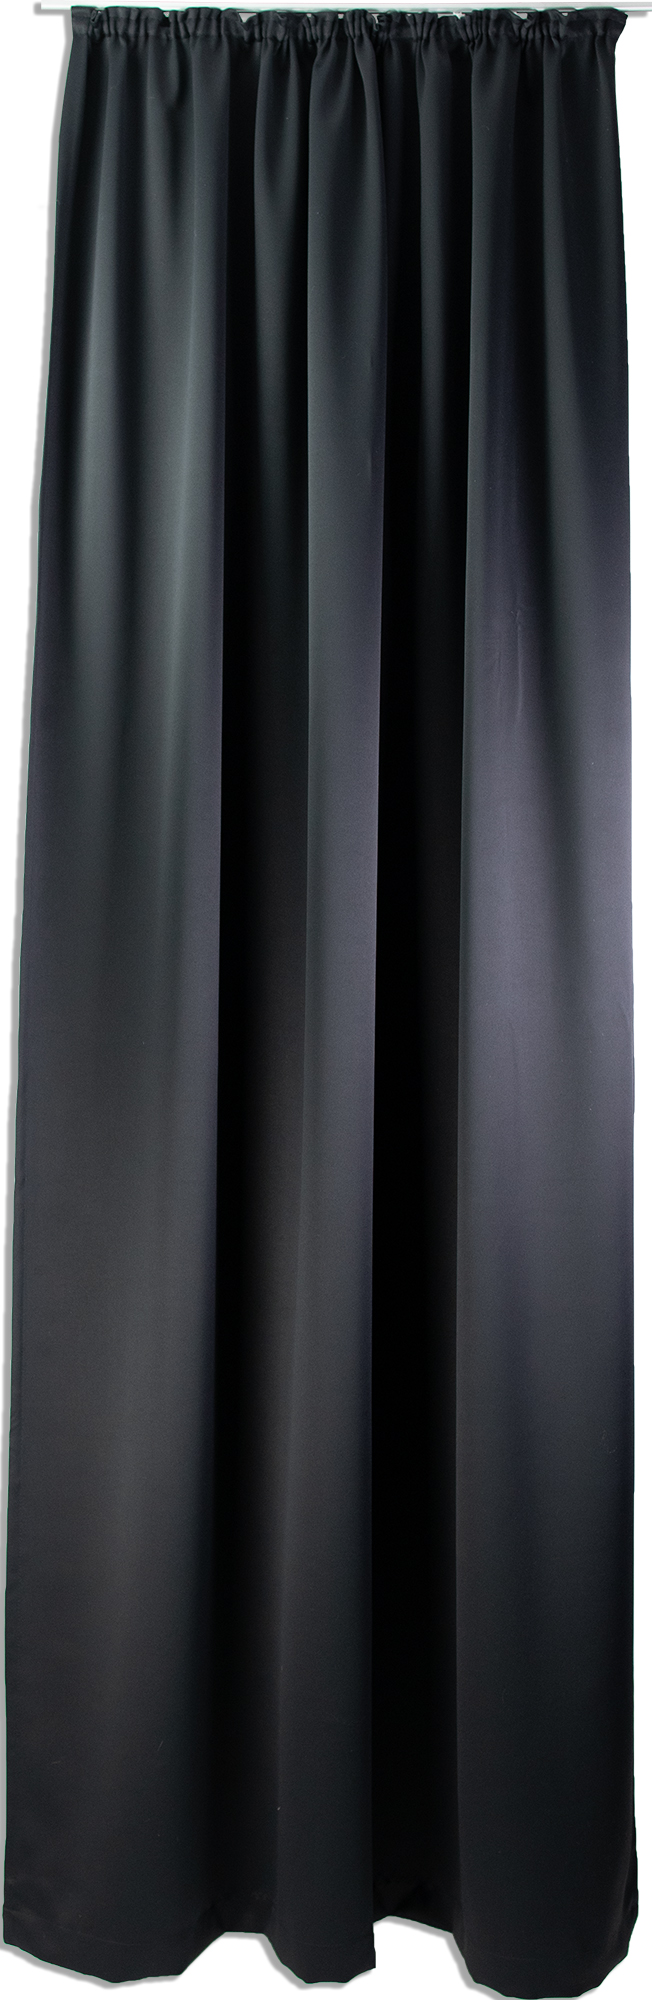 Verdunklungsvorhang 2250 15 Uni 145x245 cm mit Kräuselband verdunkelnd Schwarz